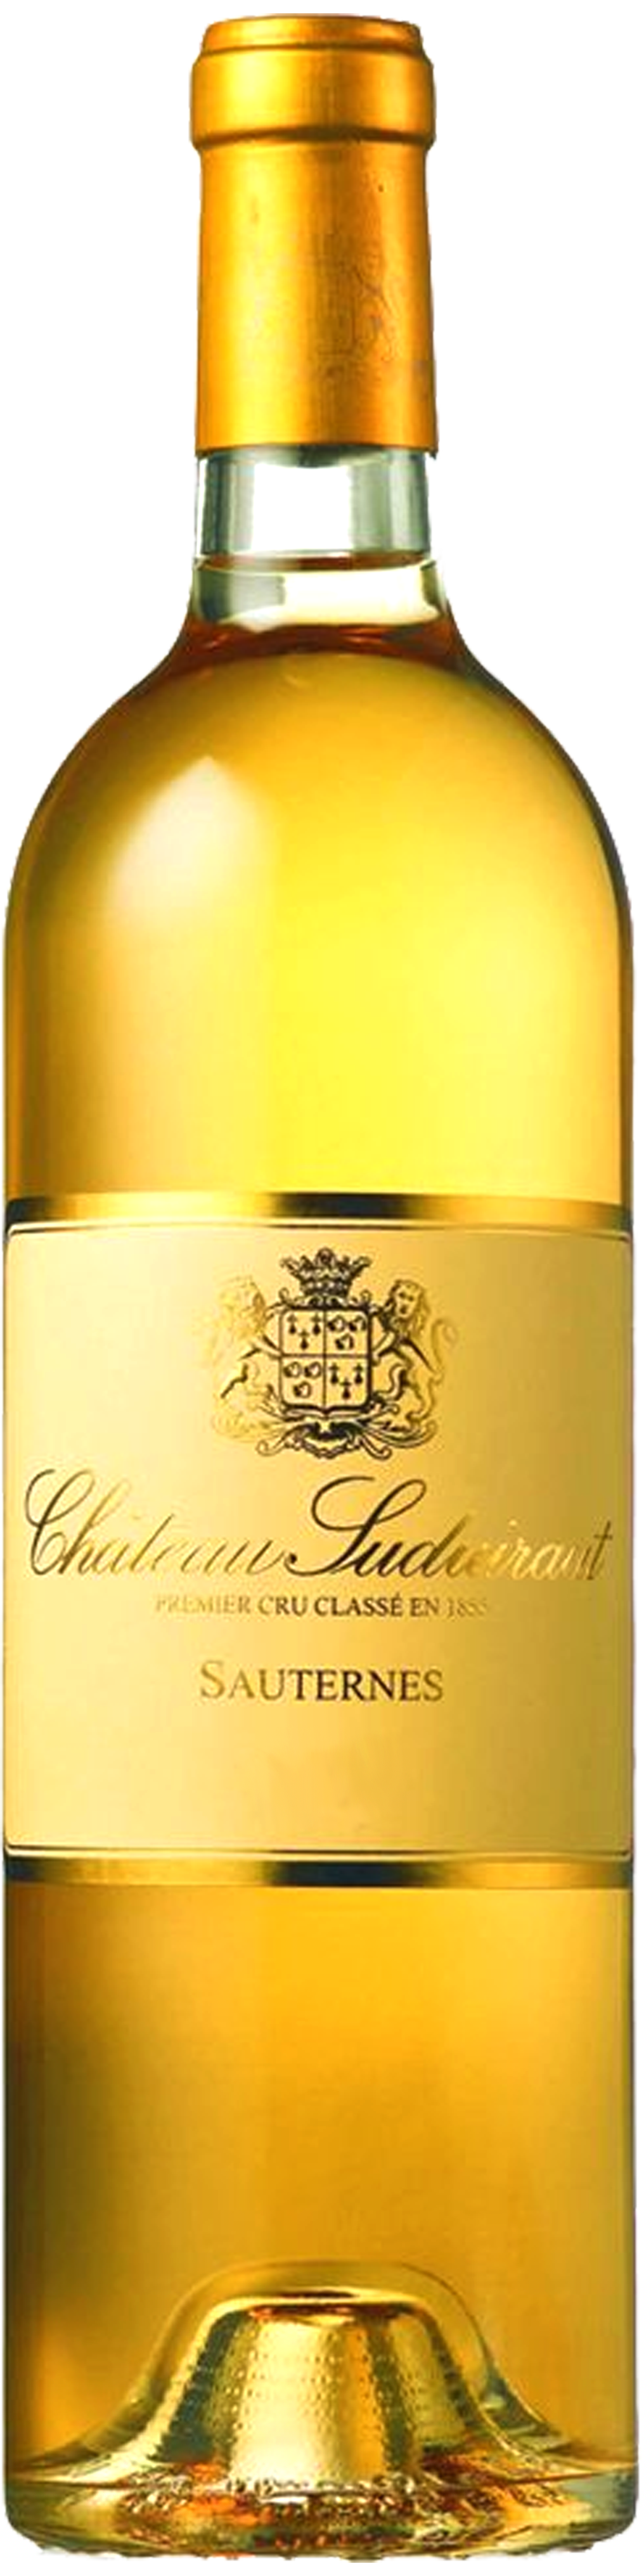 Bottle shot of 2010 Château Suduiraut, 1er Cru Sauternes